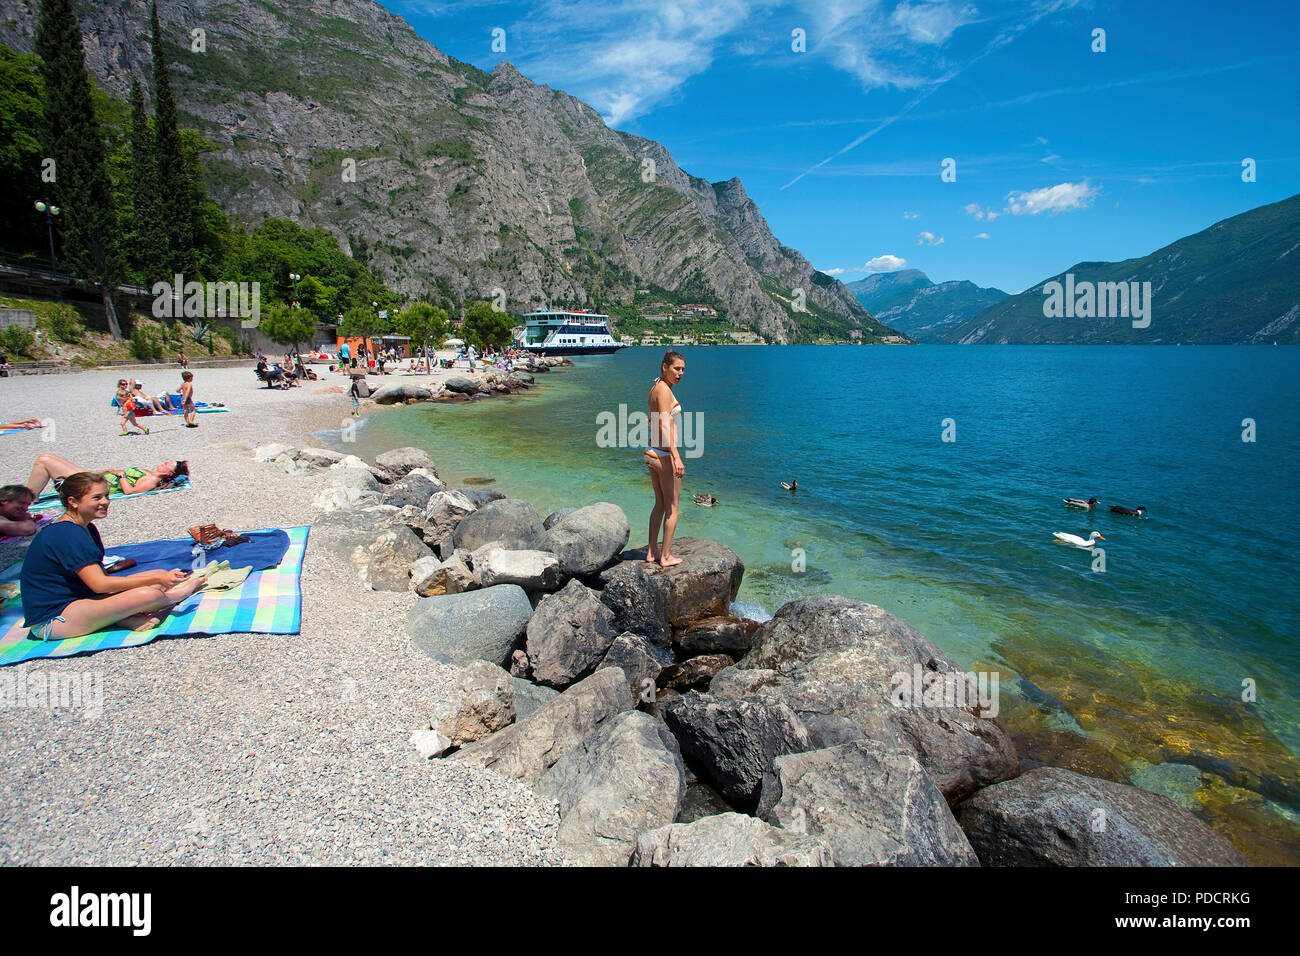 La gente sulla spiaggia di Limone, Limone sul Garda Lago di Garda, Lombardia, Italia Foto Stock